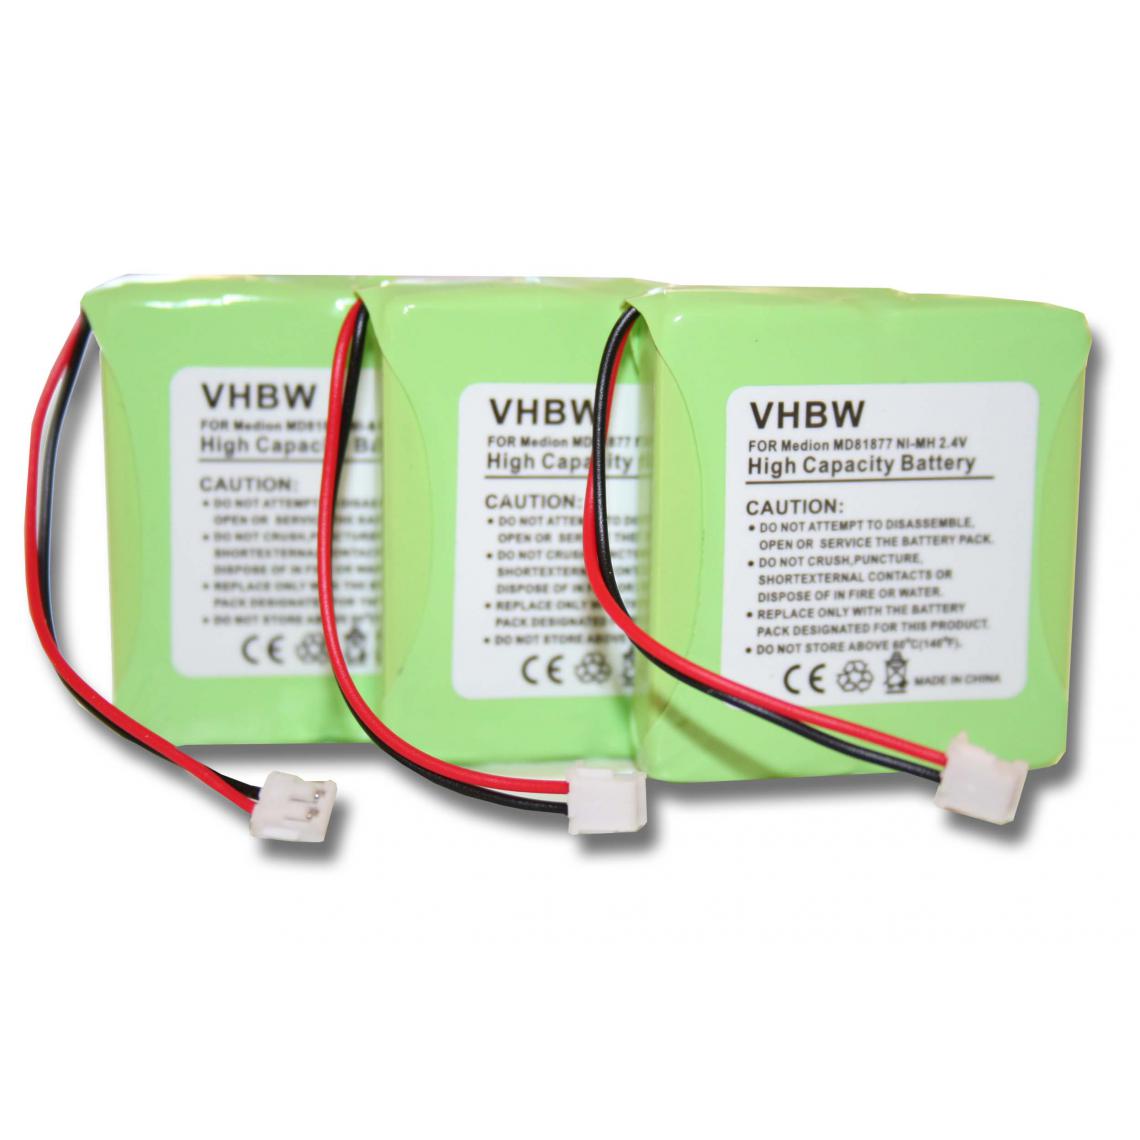 Vhbw - vhbw 3x NiMH Batterie 600mAh (2.4V) combiné téléphonique, téléphone fixe vtech VT1100, VT2020. Remplace: 5M702BMX, GP0827. - Batterie téléphone